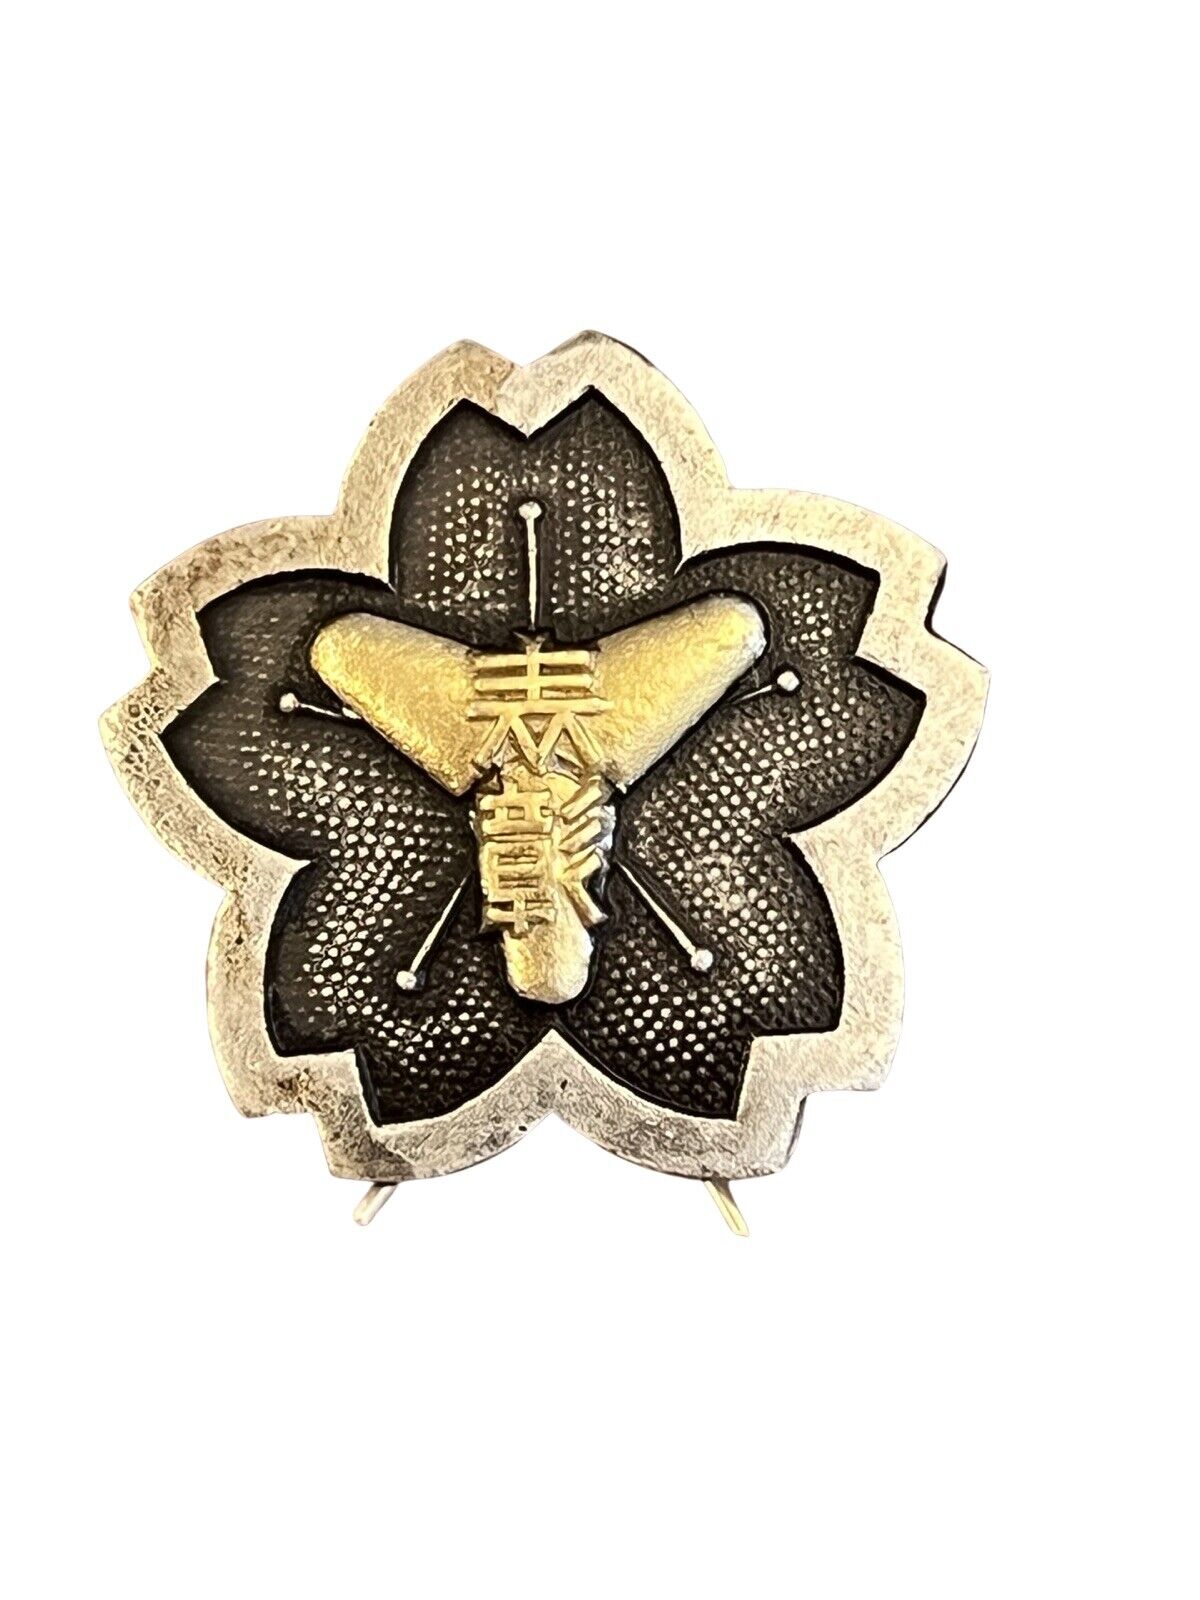 Vintage Japanese Fire Brigade Award Badge Medal Fireman Firefighter Japan